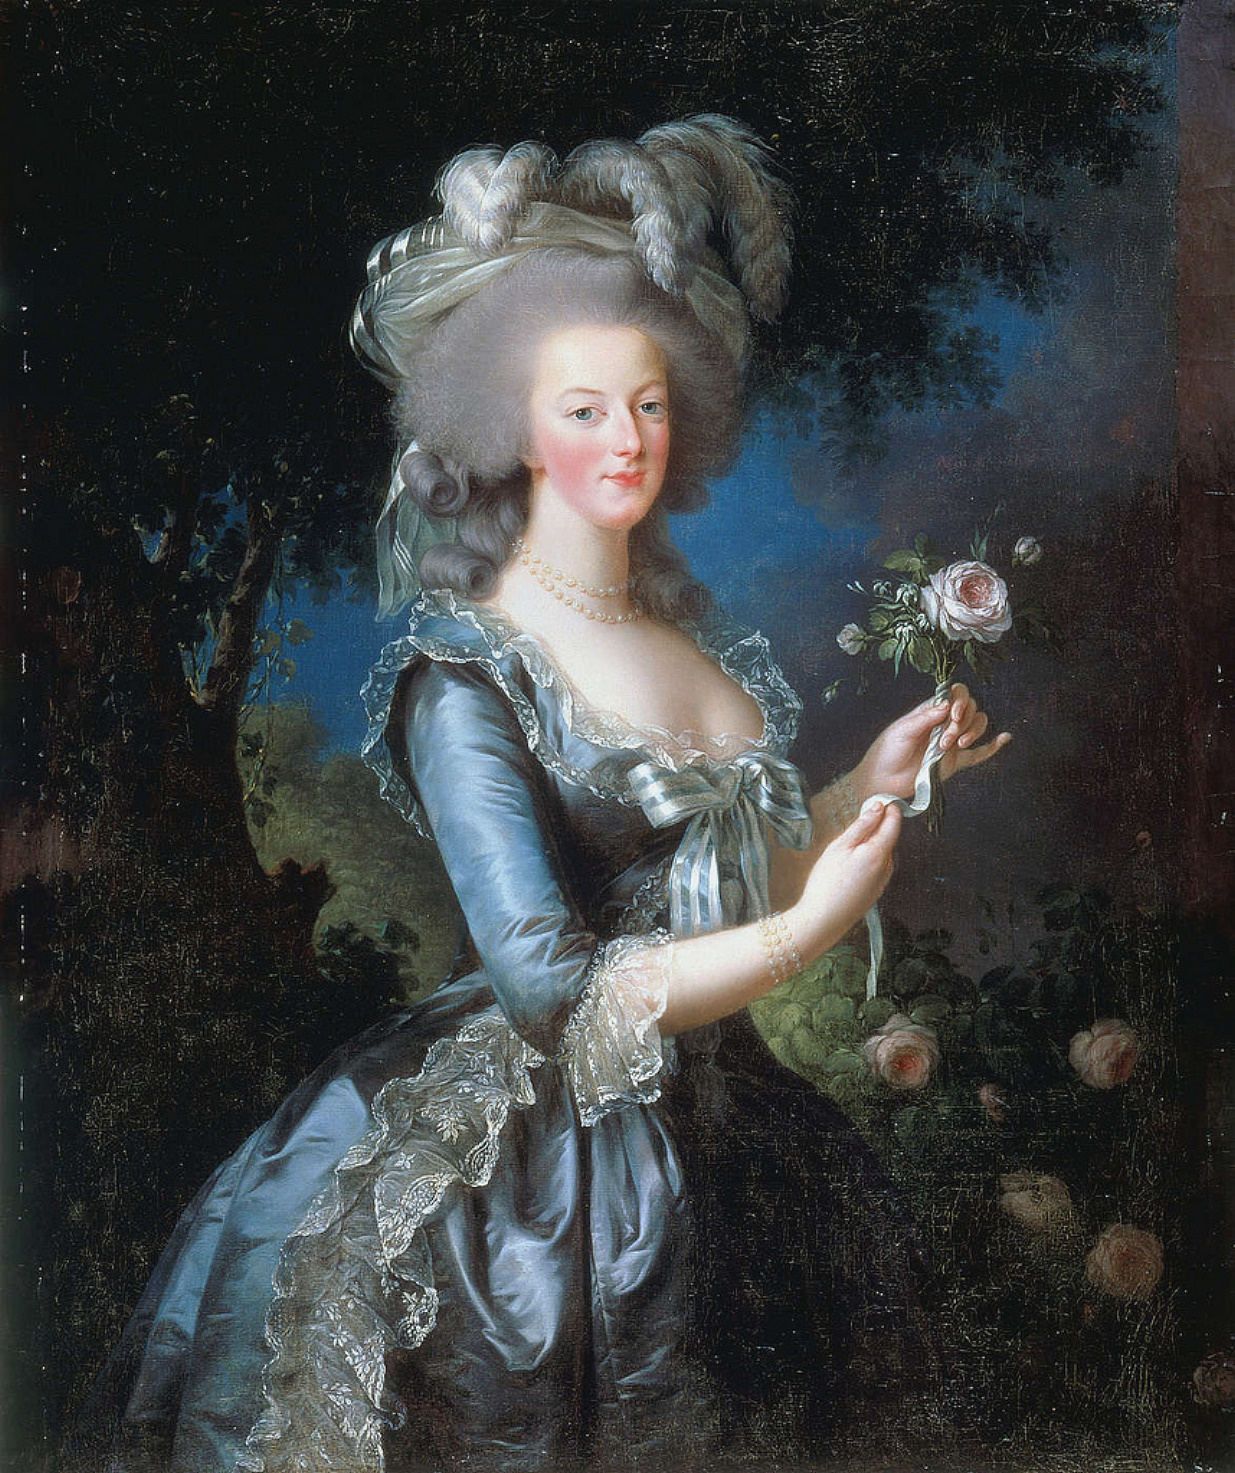 マリー・アントワネット by Élisabeth Vigee Le Brun - 1783年 